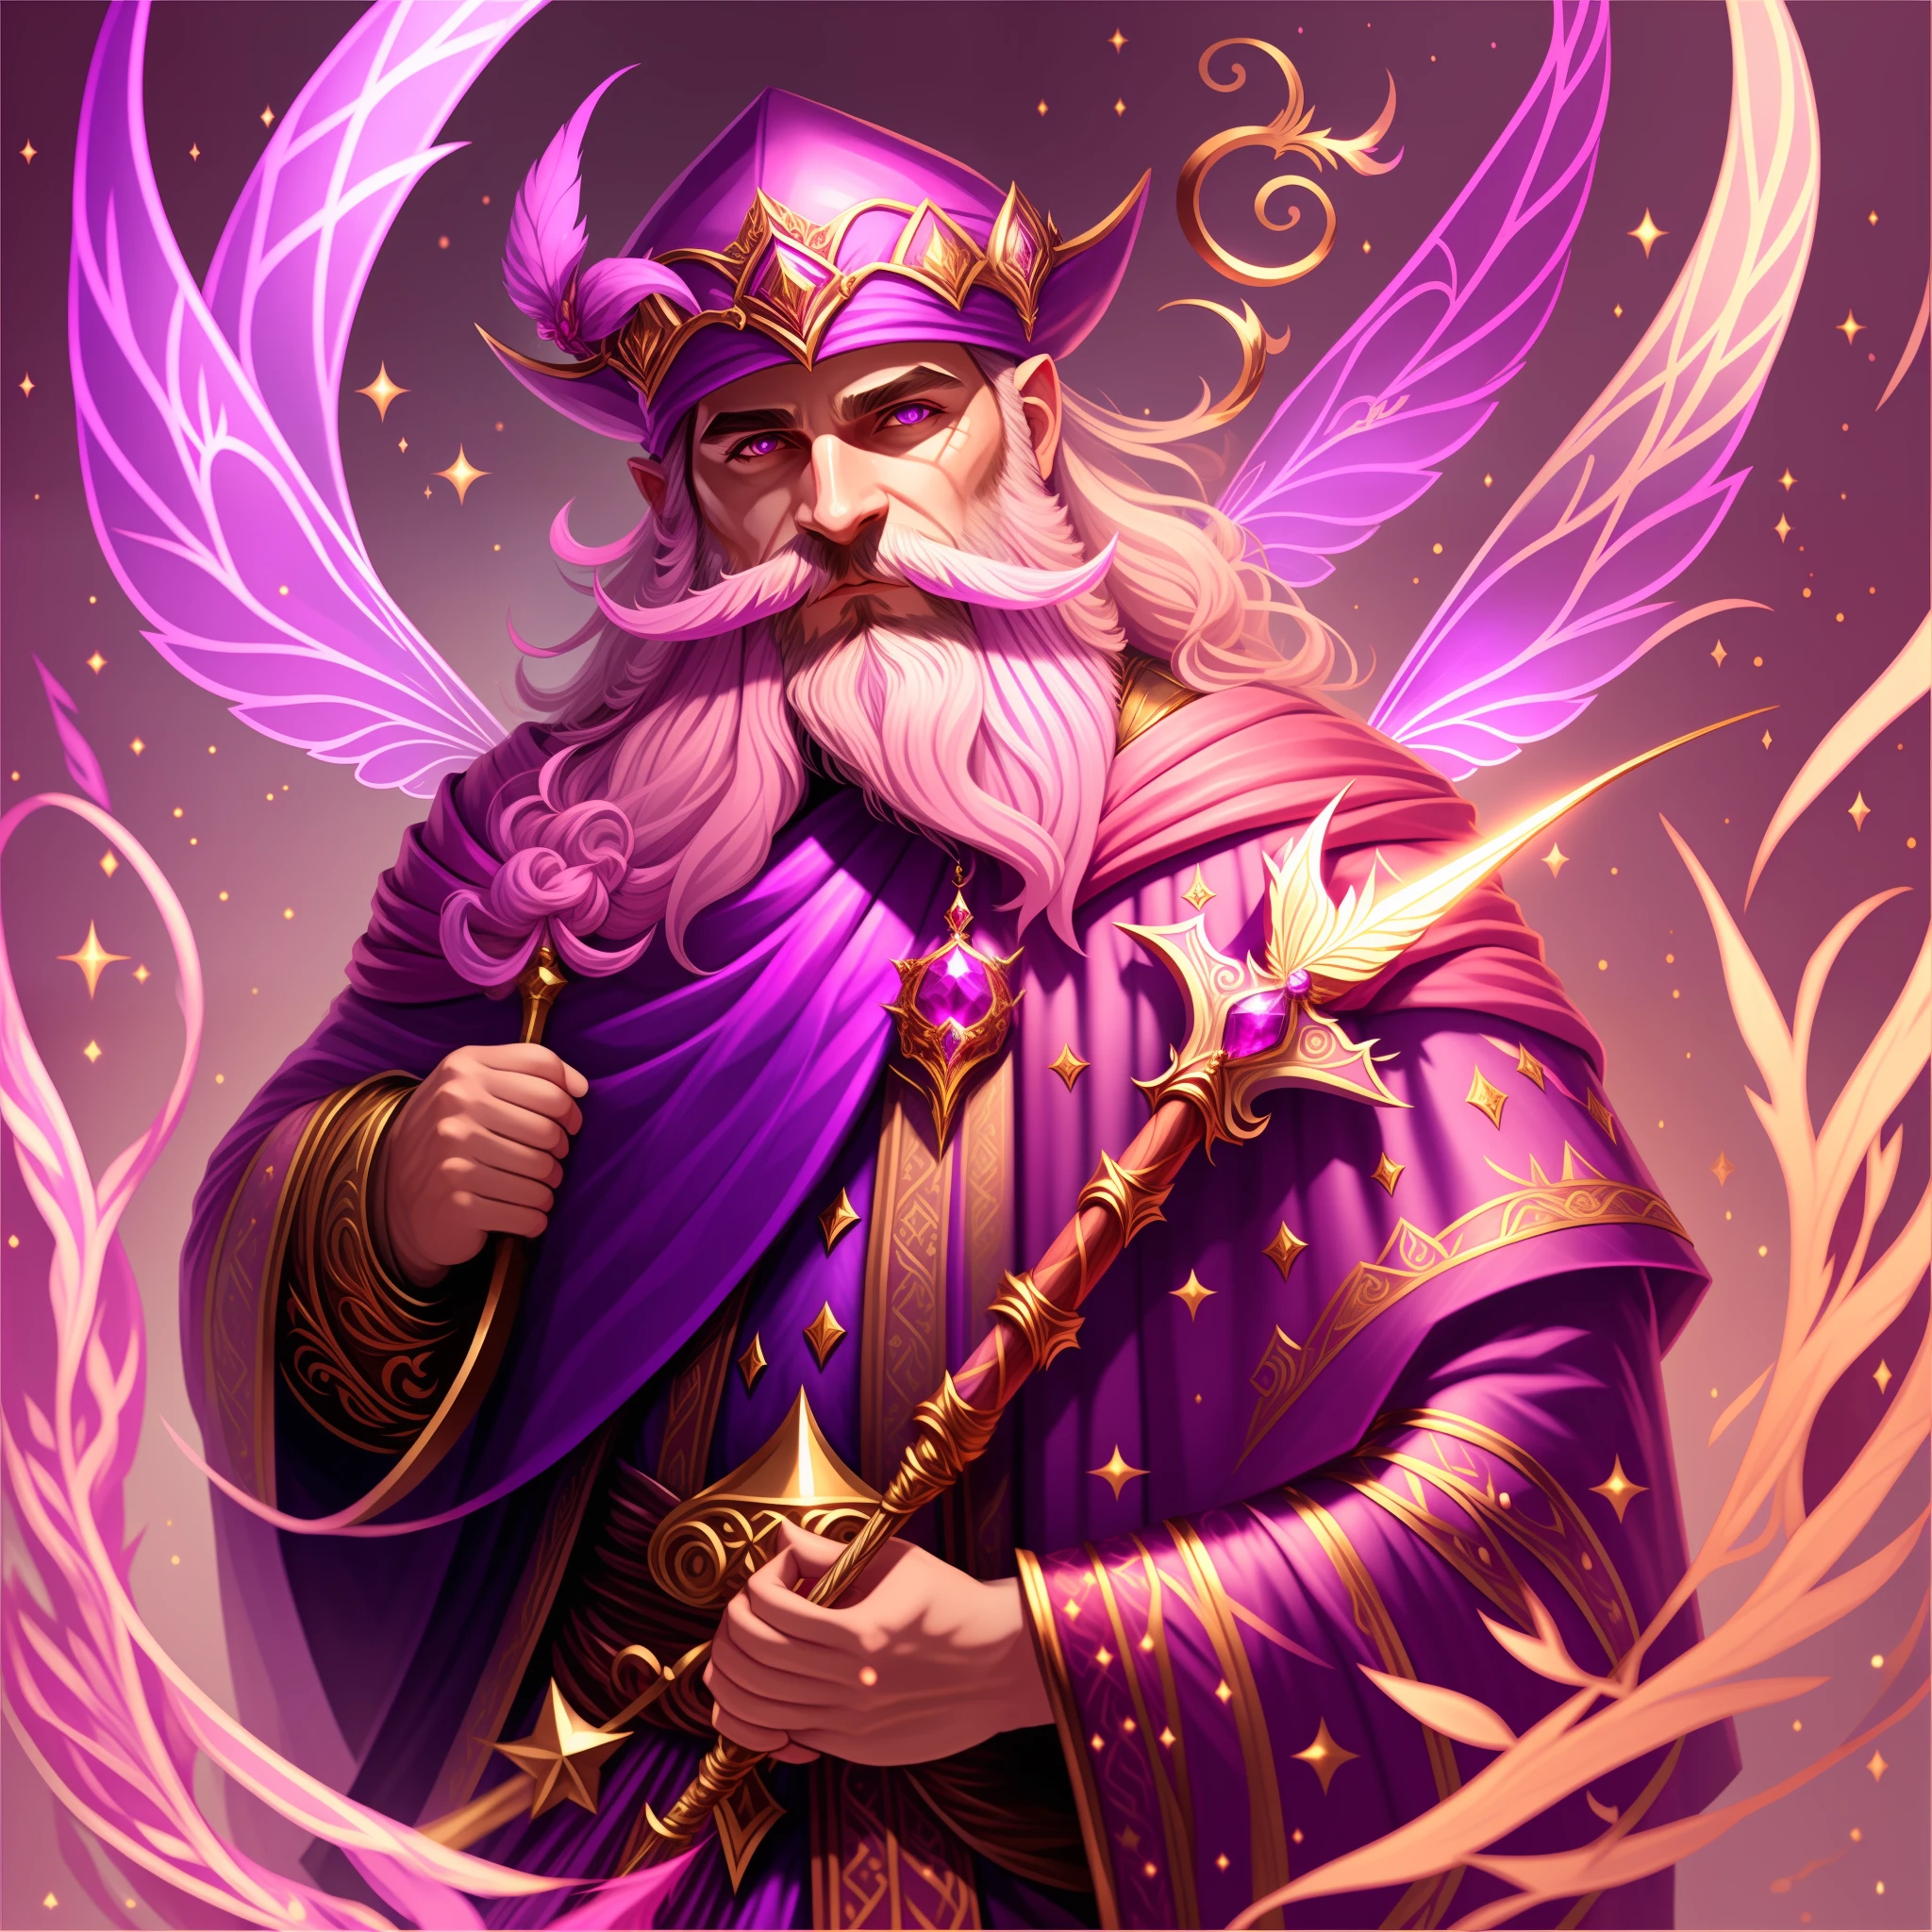 仙女, 男性, 粉紅紫色巫師斗篷, 帶有紅寶石的金魔杖, 巫師鬍子, 魔法四處飛舞, 傑作, 最好的品質